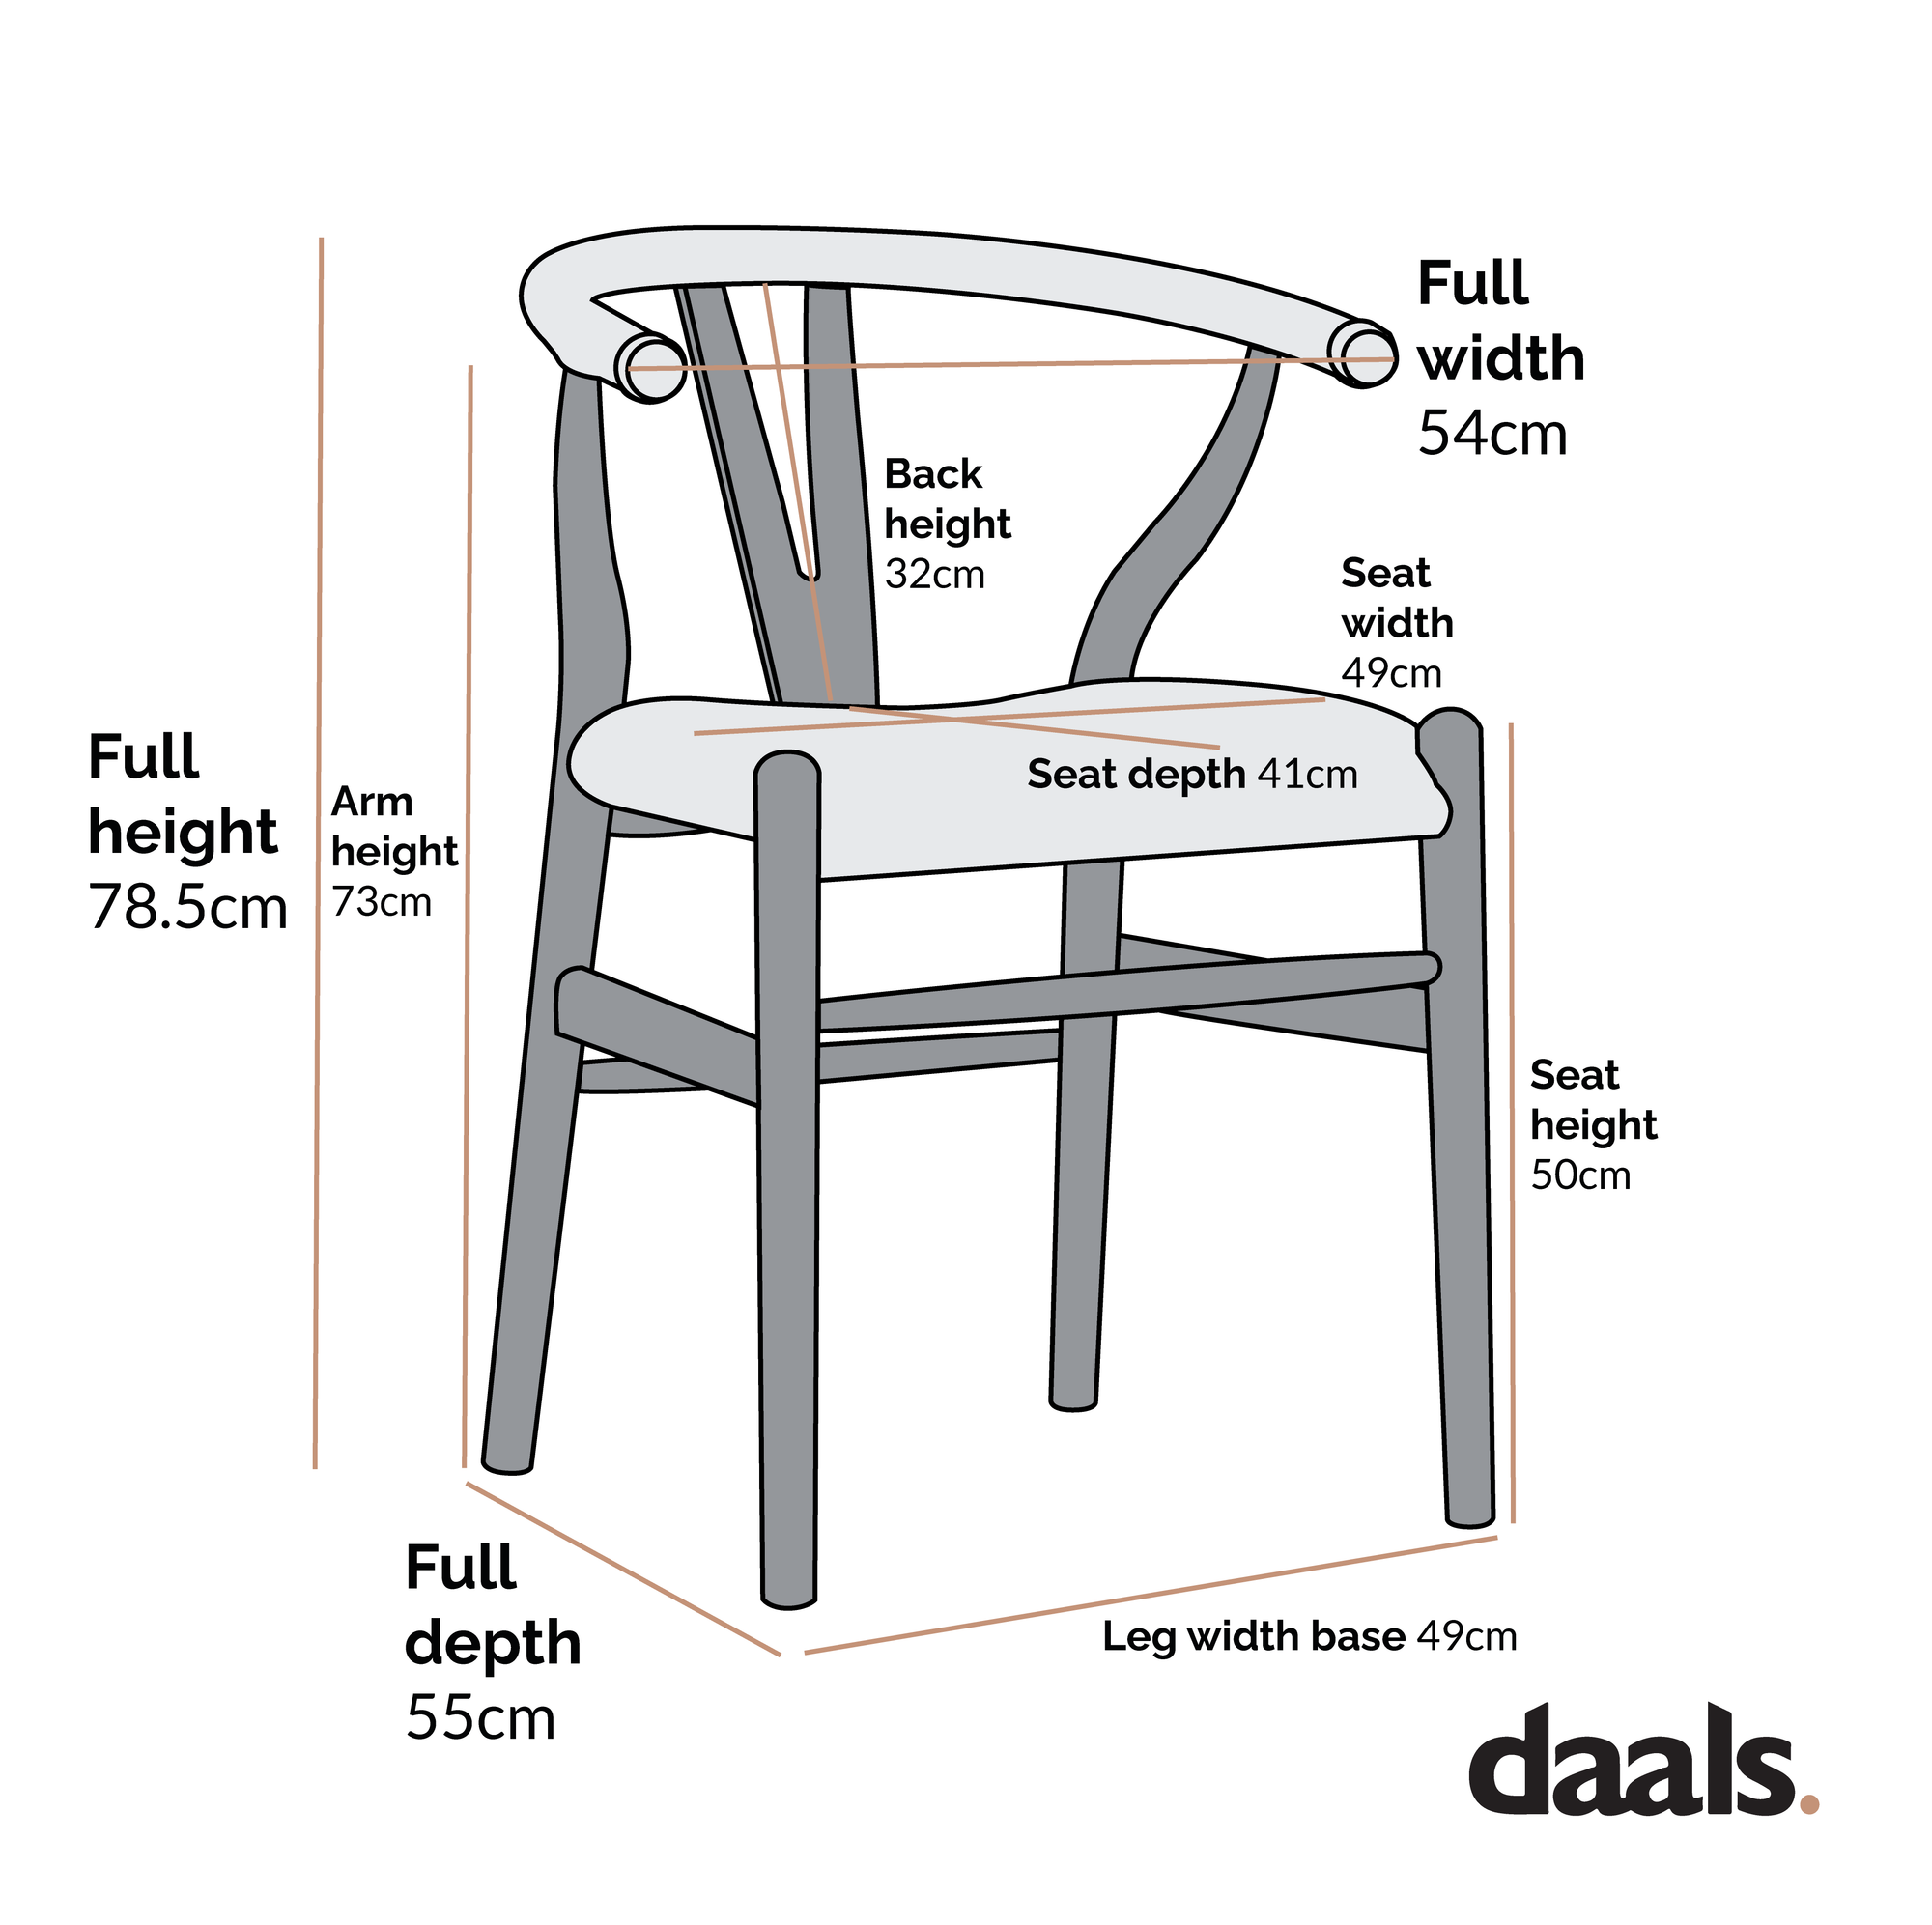 Hansel Wishbone Padded Dining Chair, Rust Velvet and Black Frame